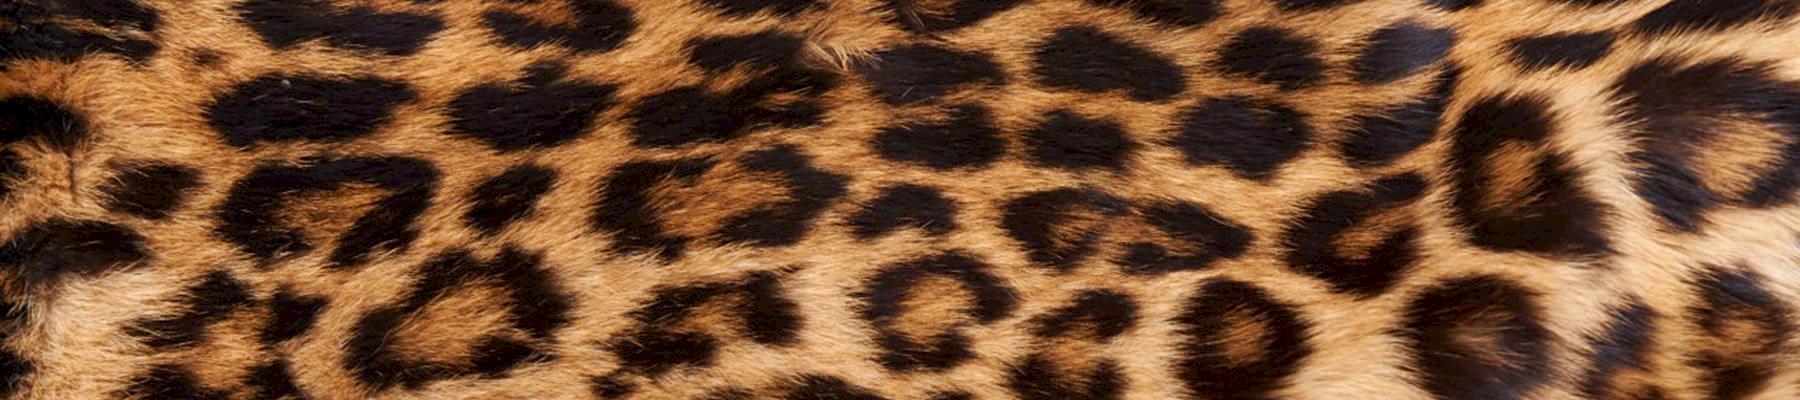 Leopard skin © Ola Jennersten  WWF-Sweden